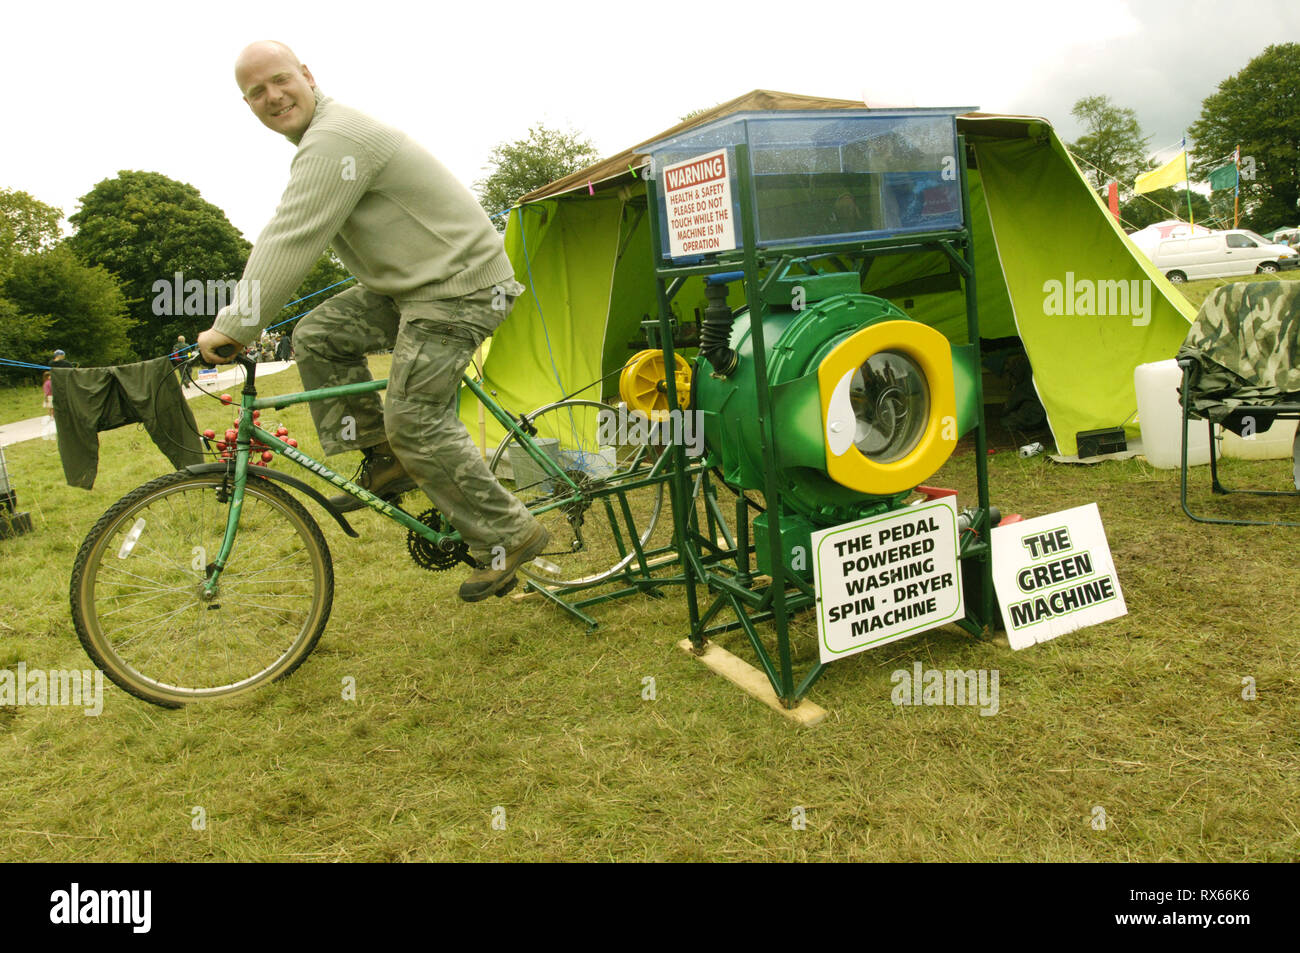 Un homme soucieux de l'offrant ses services d'une laverie automatique, une grande puissance peddle collecte verte, UK Août 2005 Banque D'Images